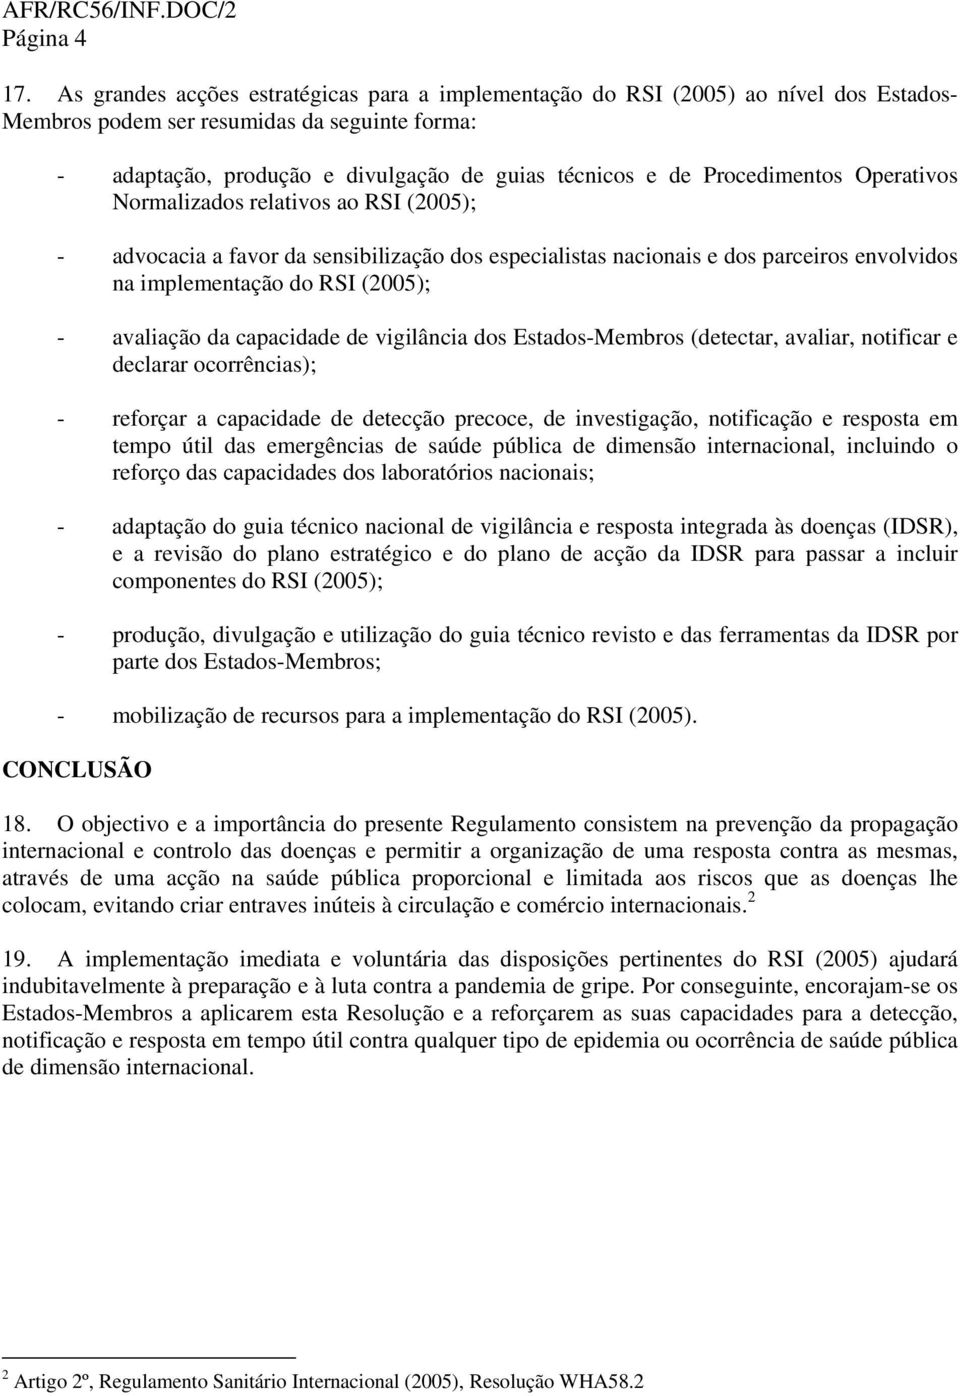 Procedimentos Operativos Normalizados relativos ao RSI (2005); - advocacia a favor da sensibilização dos especialistas nacionais e dos parceiros envolvidos na implementação do RSI (2005); - avaliação